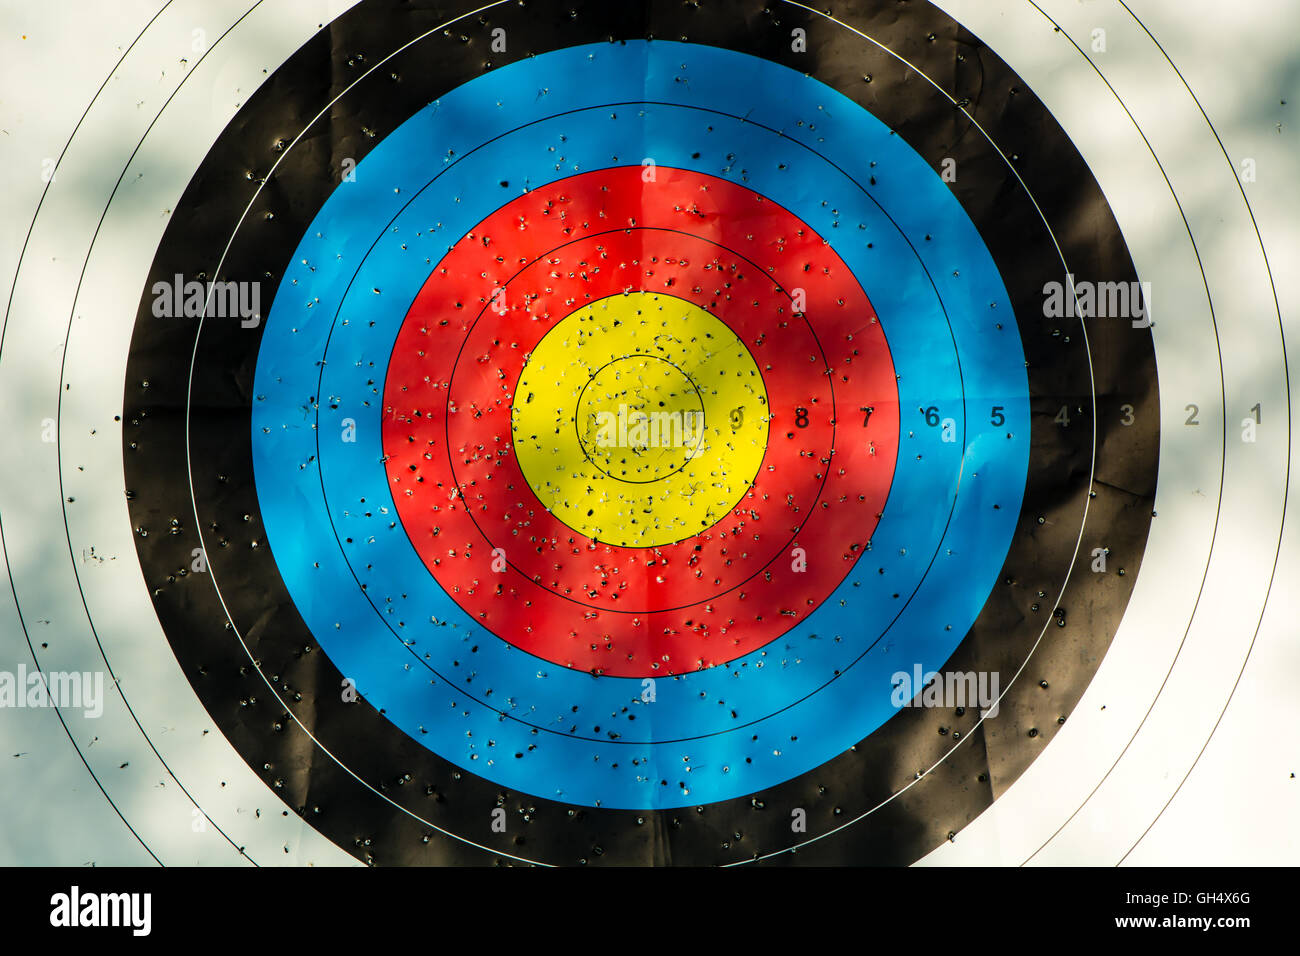 Zielscheibe mit Pfeil Löcher. Gold, rot, blau und schwarz Wettbewerb Ziel markiert wo Pfeile eingedrungen sind Stockfoto